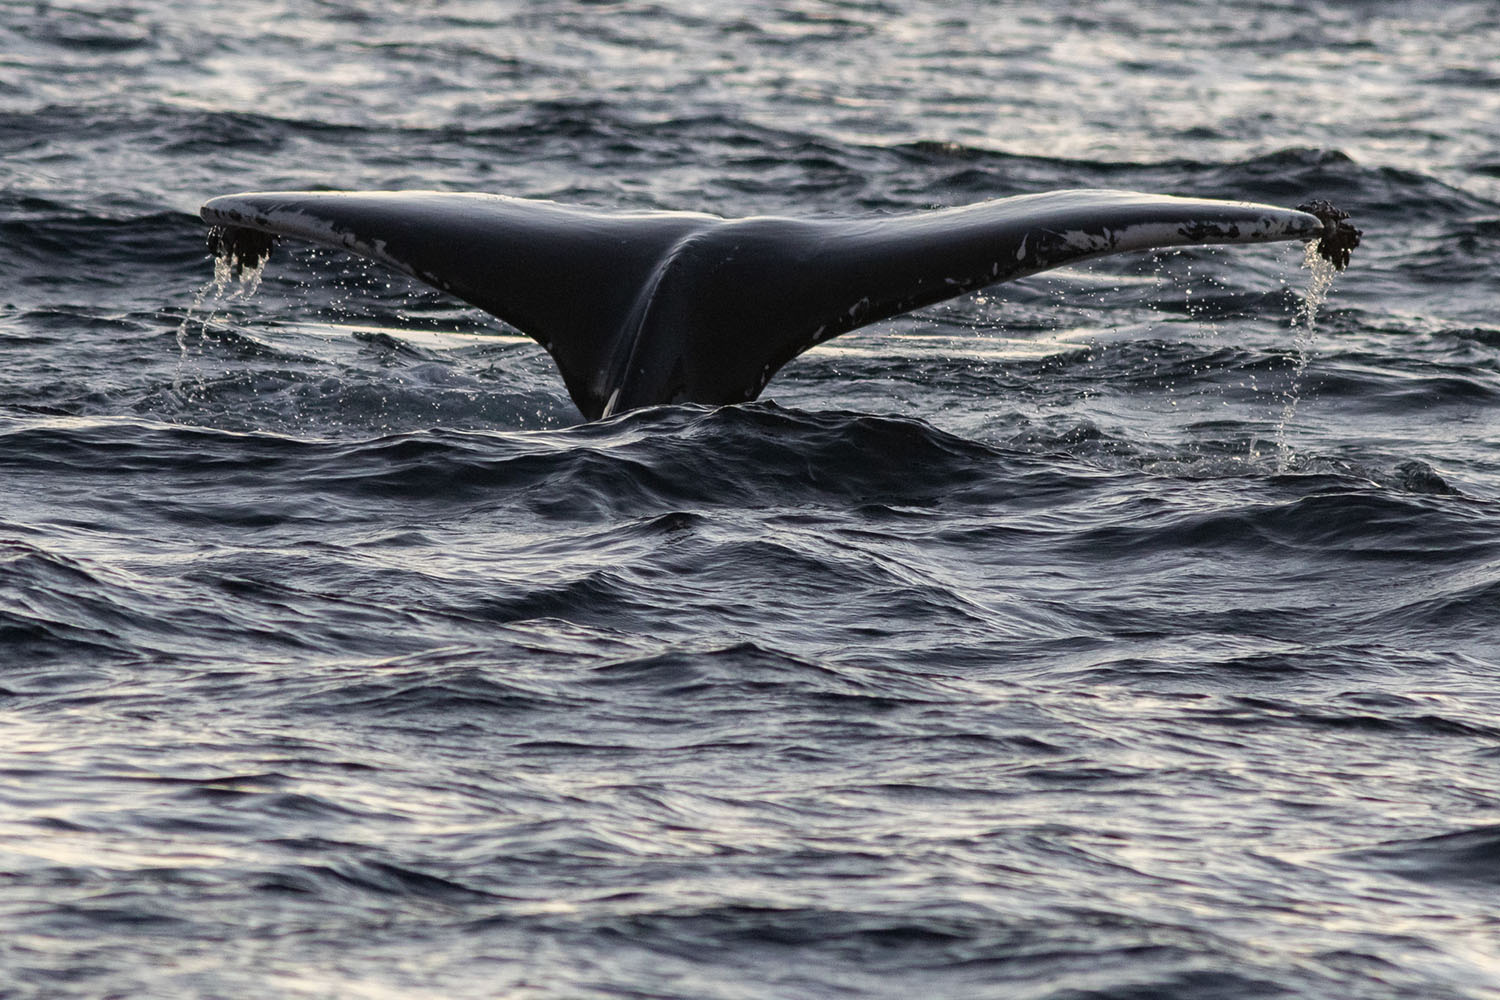 voyage scientifique - orques et baleines a bosse de norvege 45